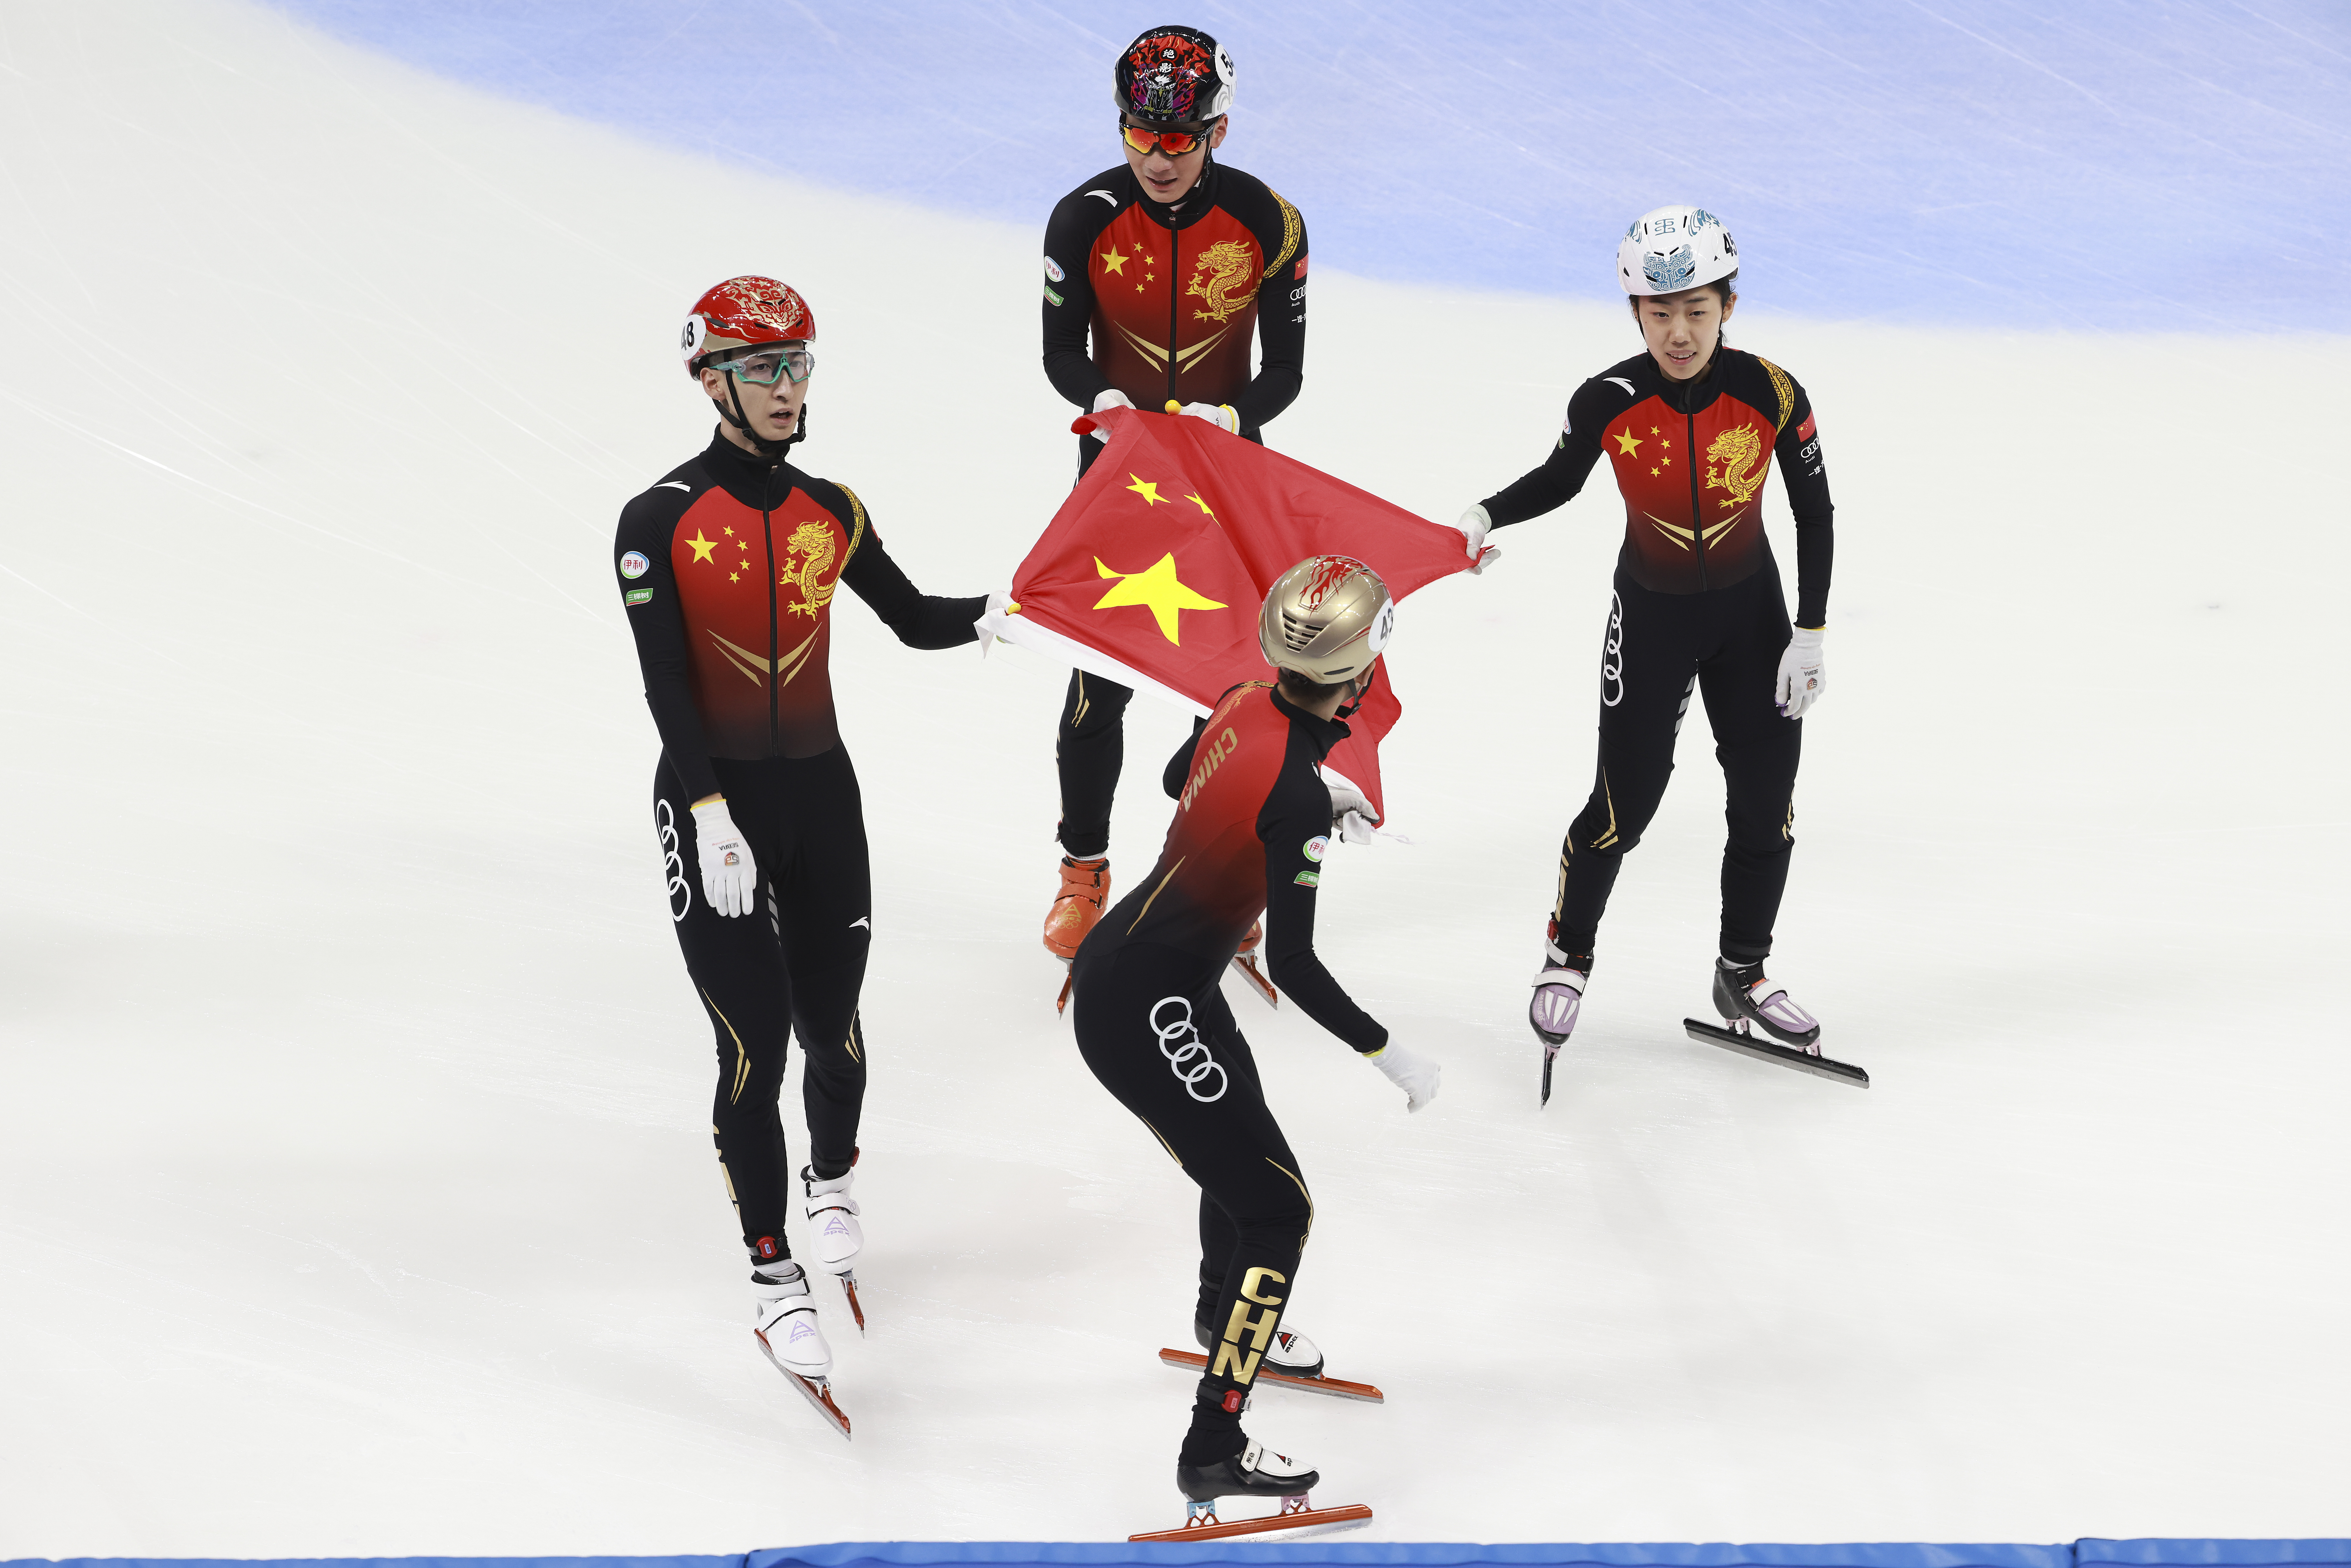 冬奥会速度滑冰金牌图片